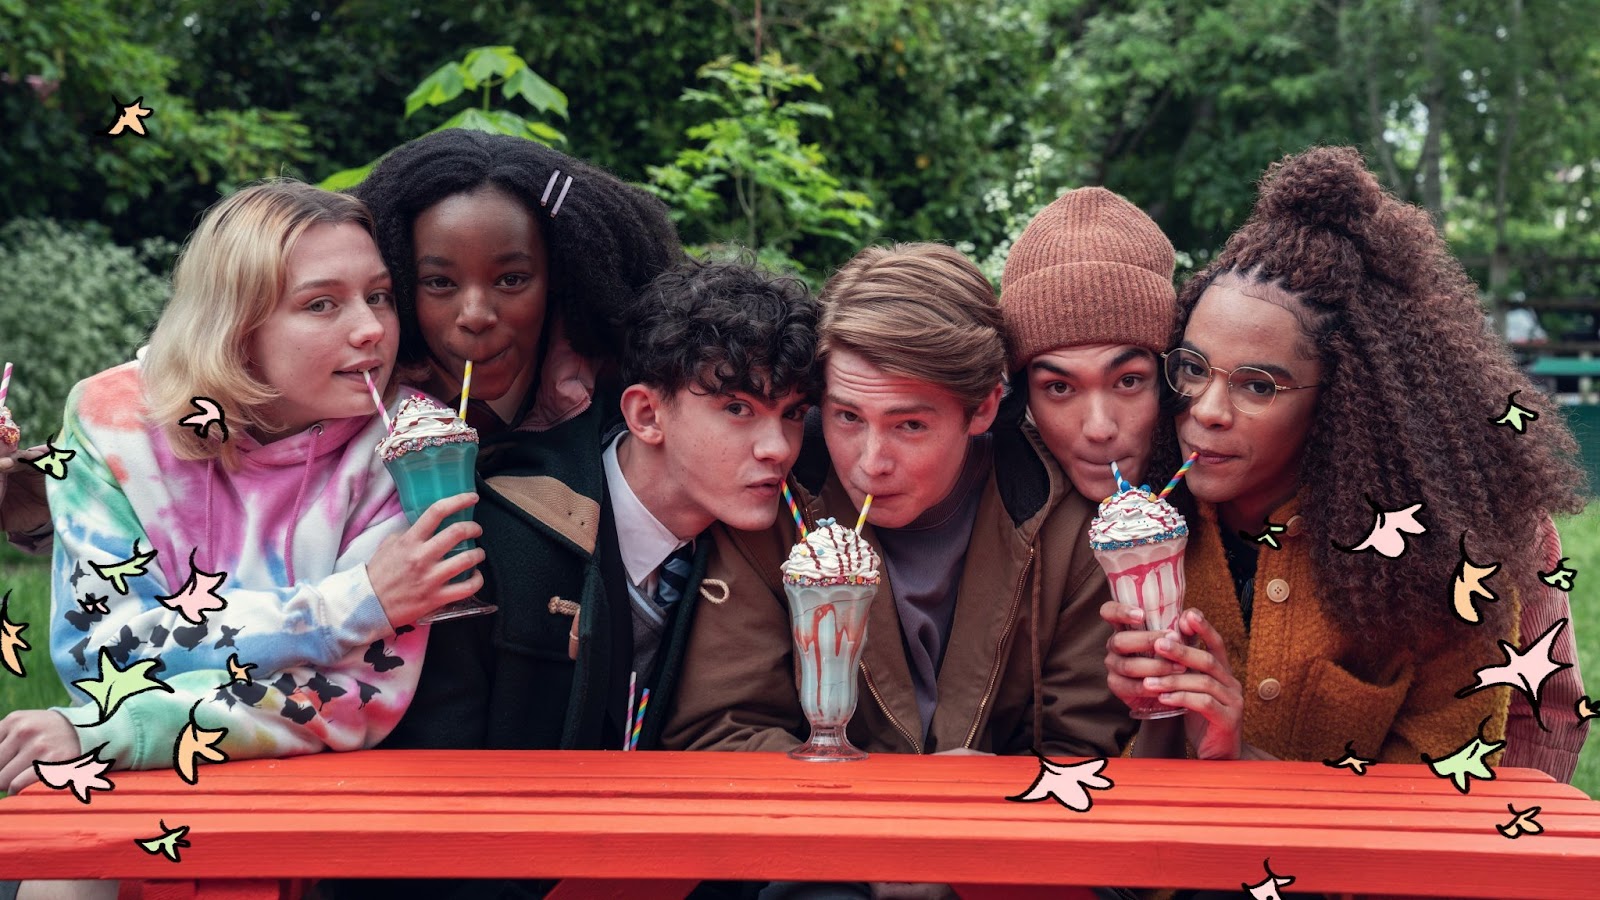 Elenco principal de Heartstopper com os três casais juntos tomando milkshakes. Da esquerda para a direita: Darcy e Tara, Charlie e Nick, Tao e Elle.